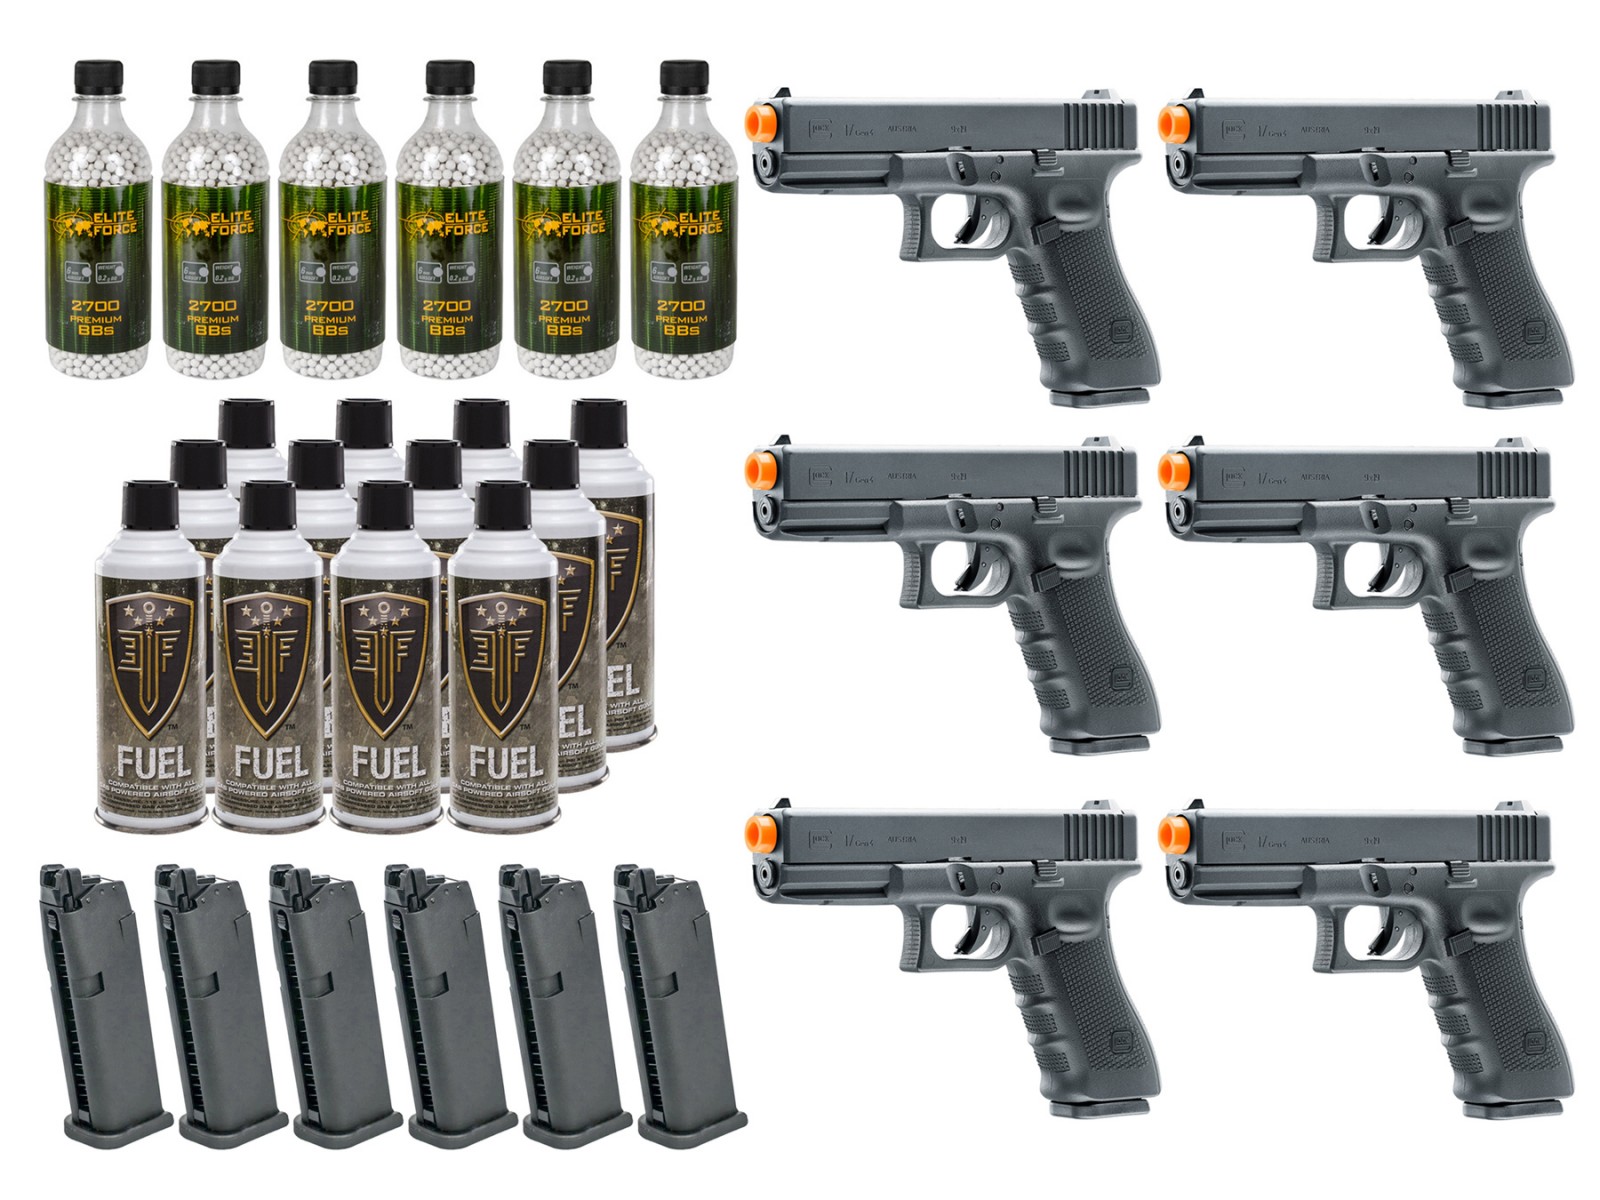 6 Umarex Elite Force Glock G17 Gen4 GBB Airsoft Pistol Kits 6mm